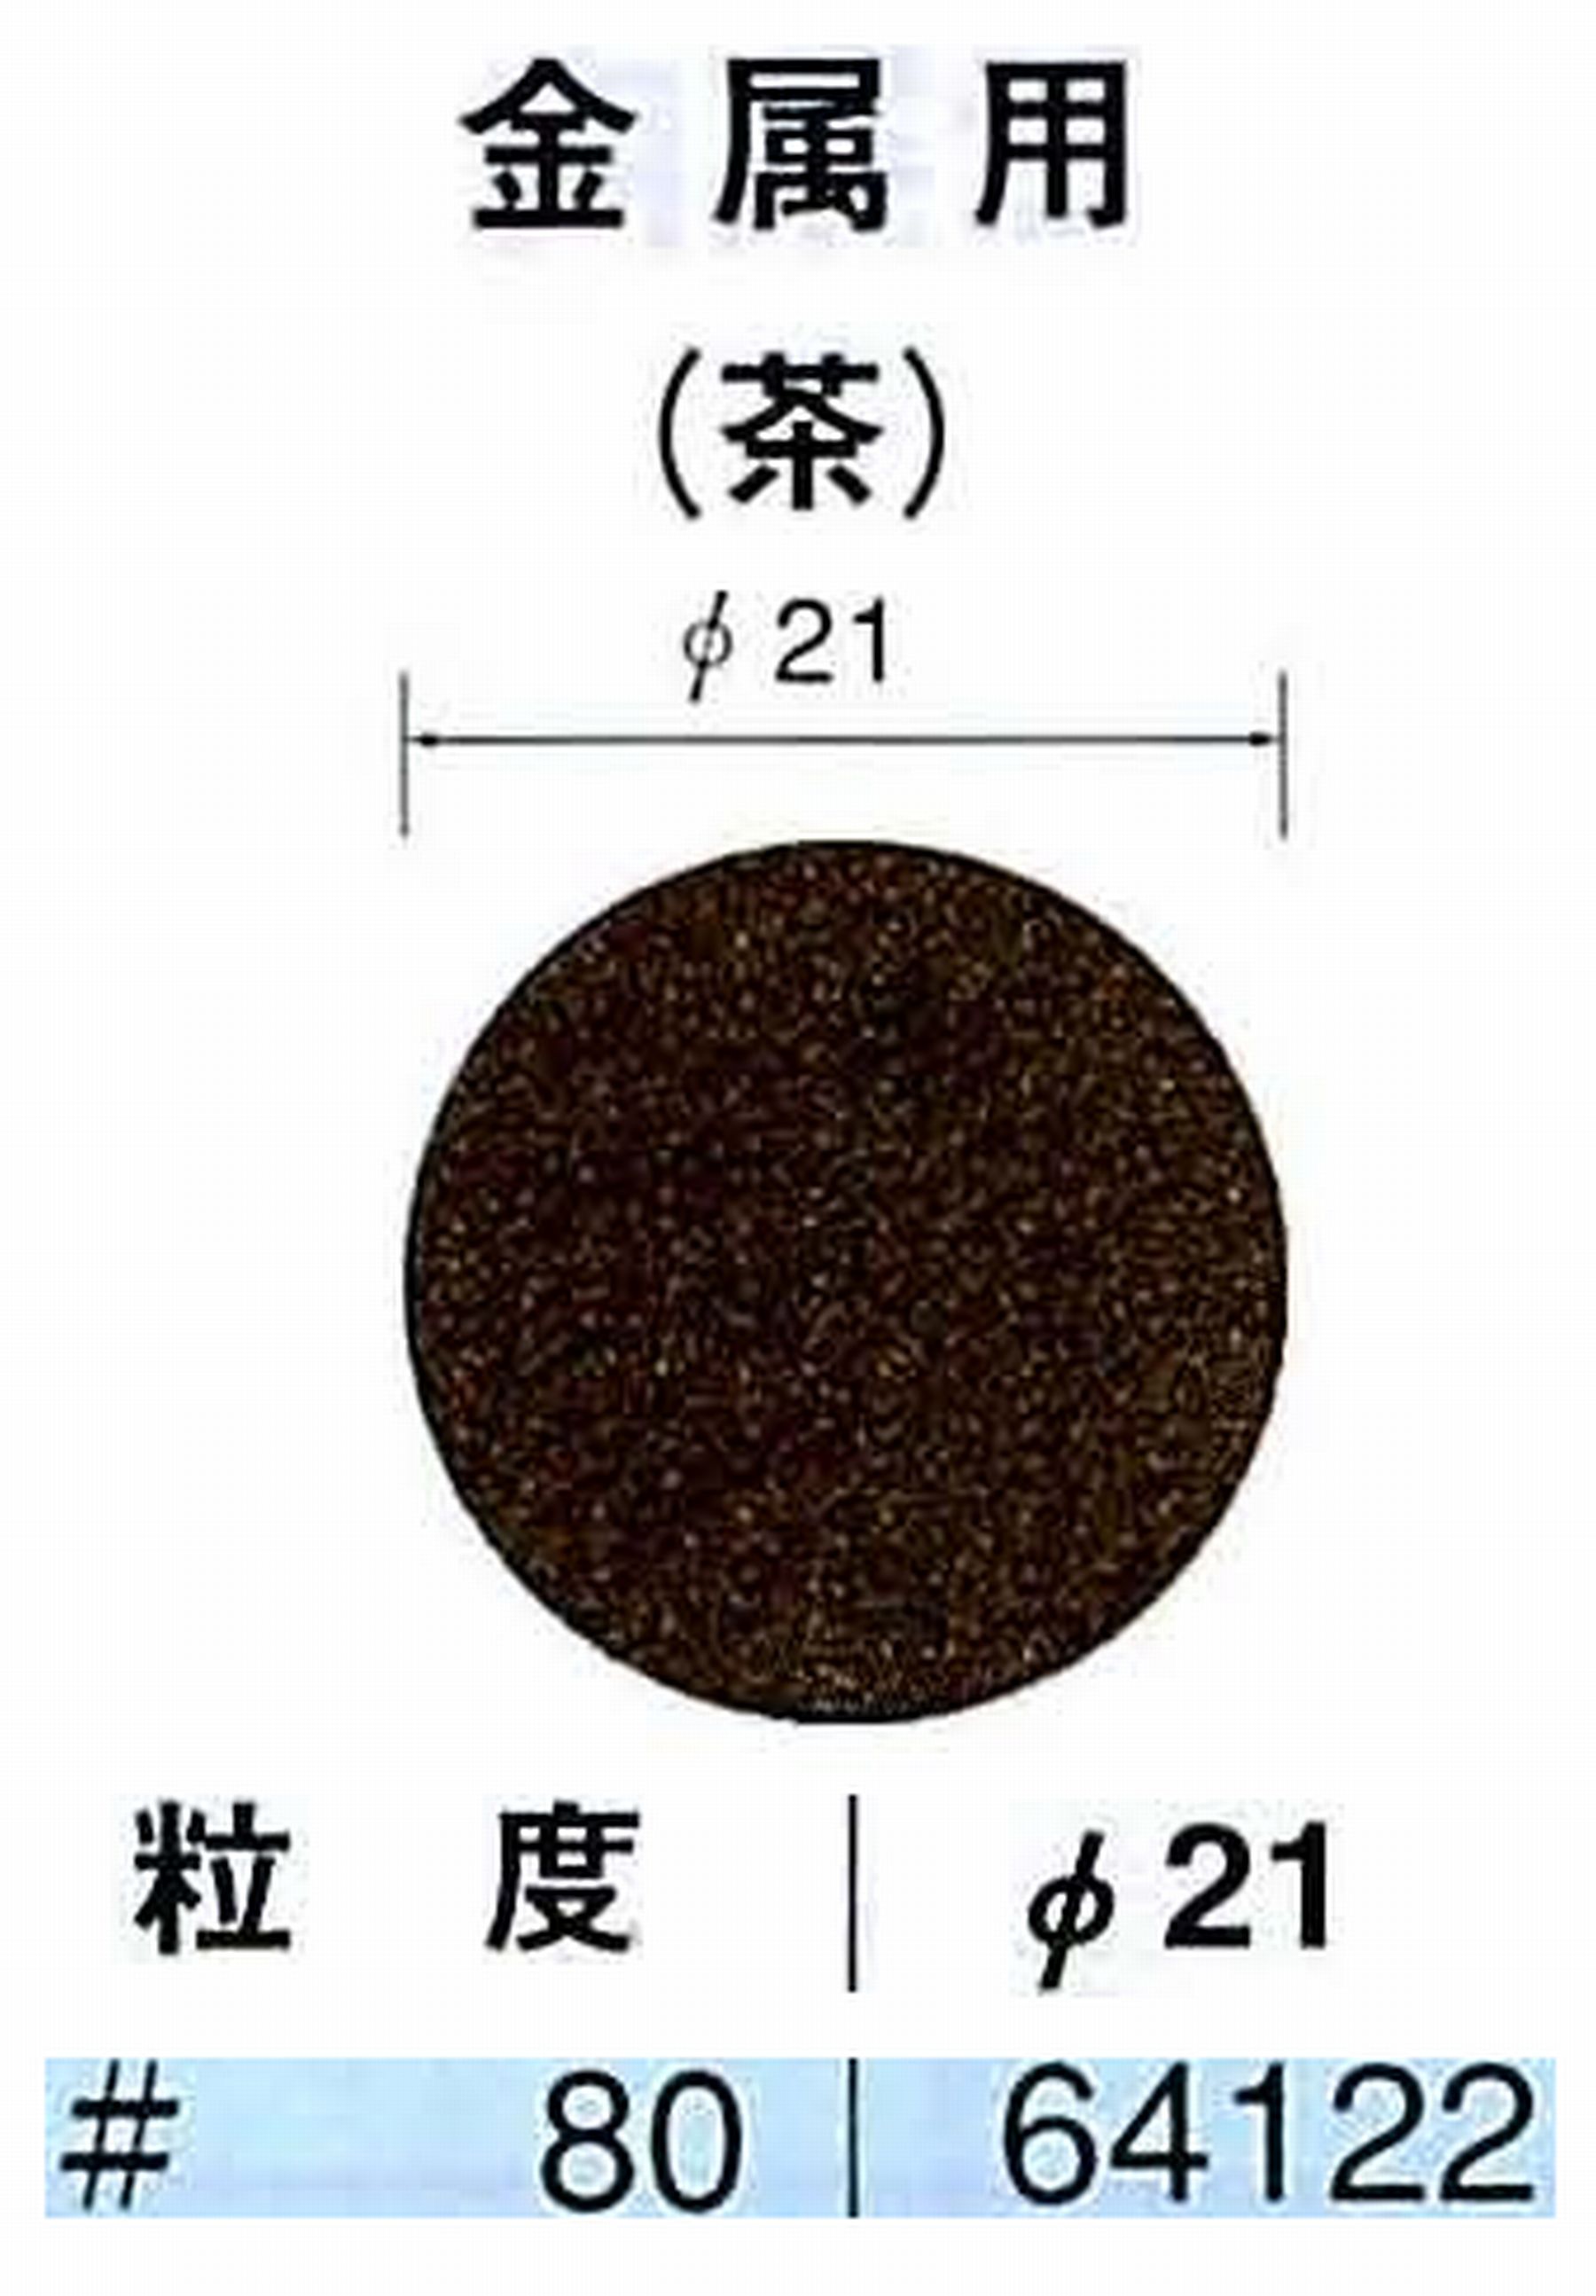 ナカニシ/NAKANISHI アングルグラインダ(電動・エアー) アングルアタッチメント専用工具 サンドペーパーディスク(布基材タイプ)裏面のり処理 64122